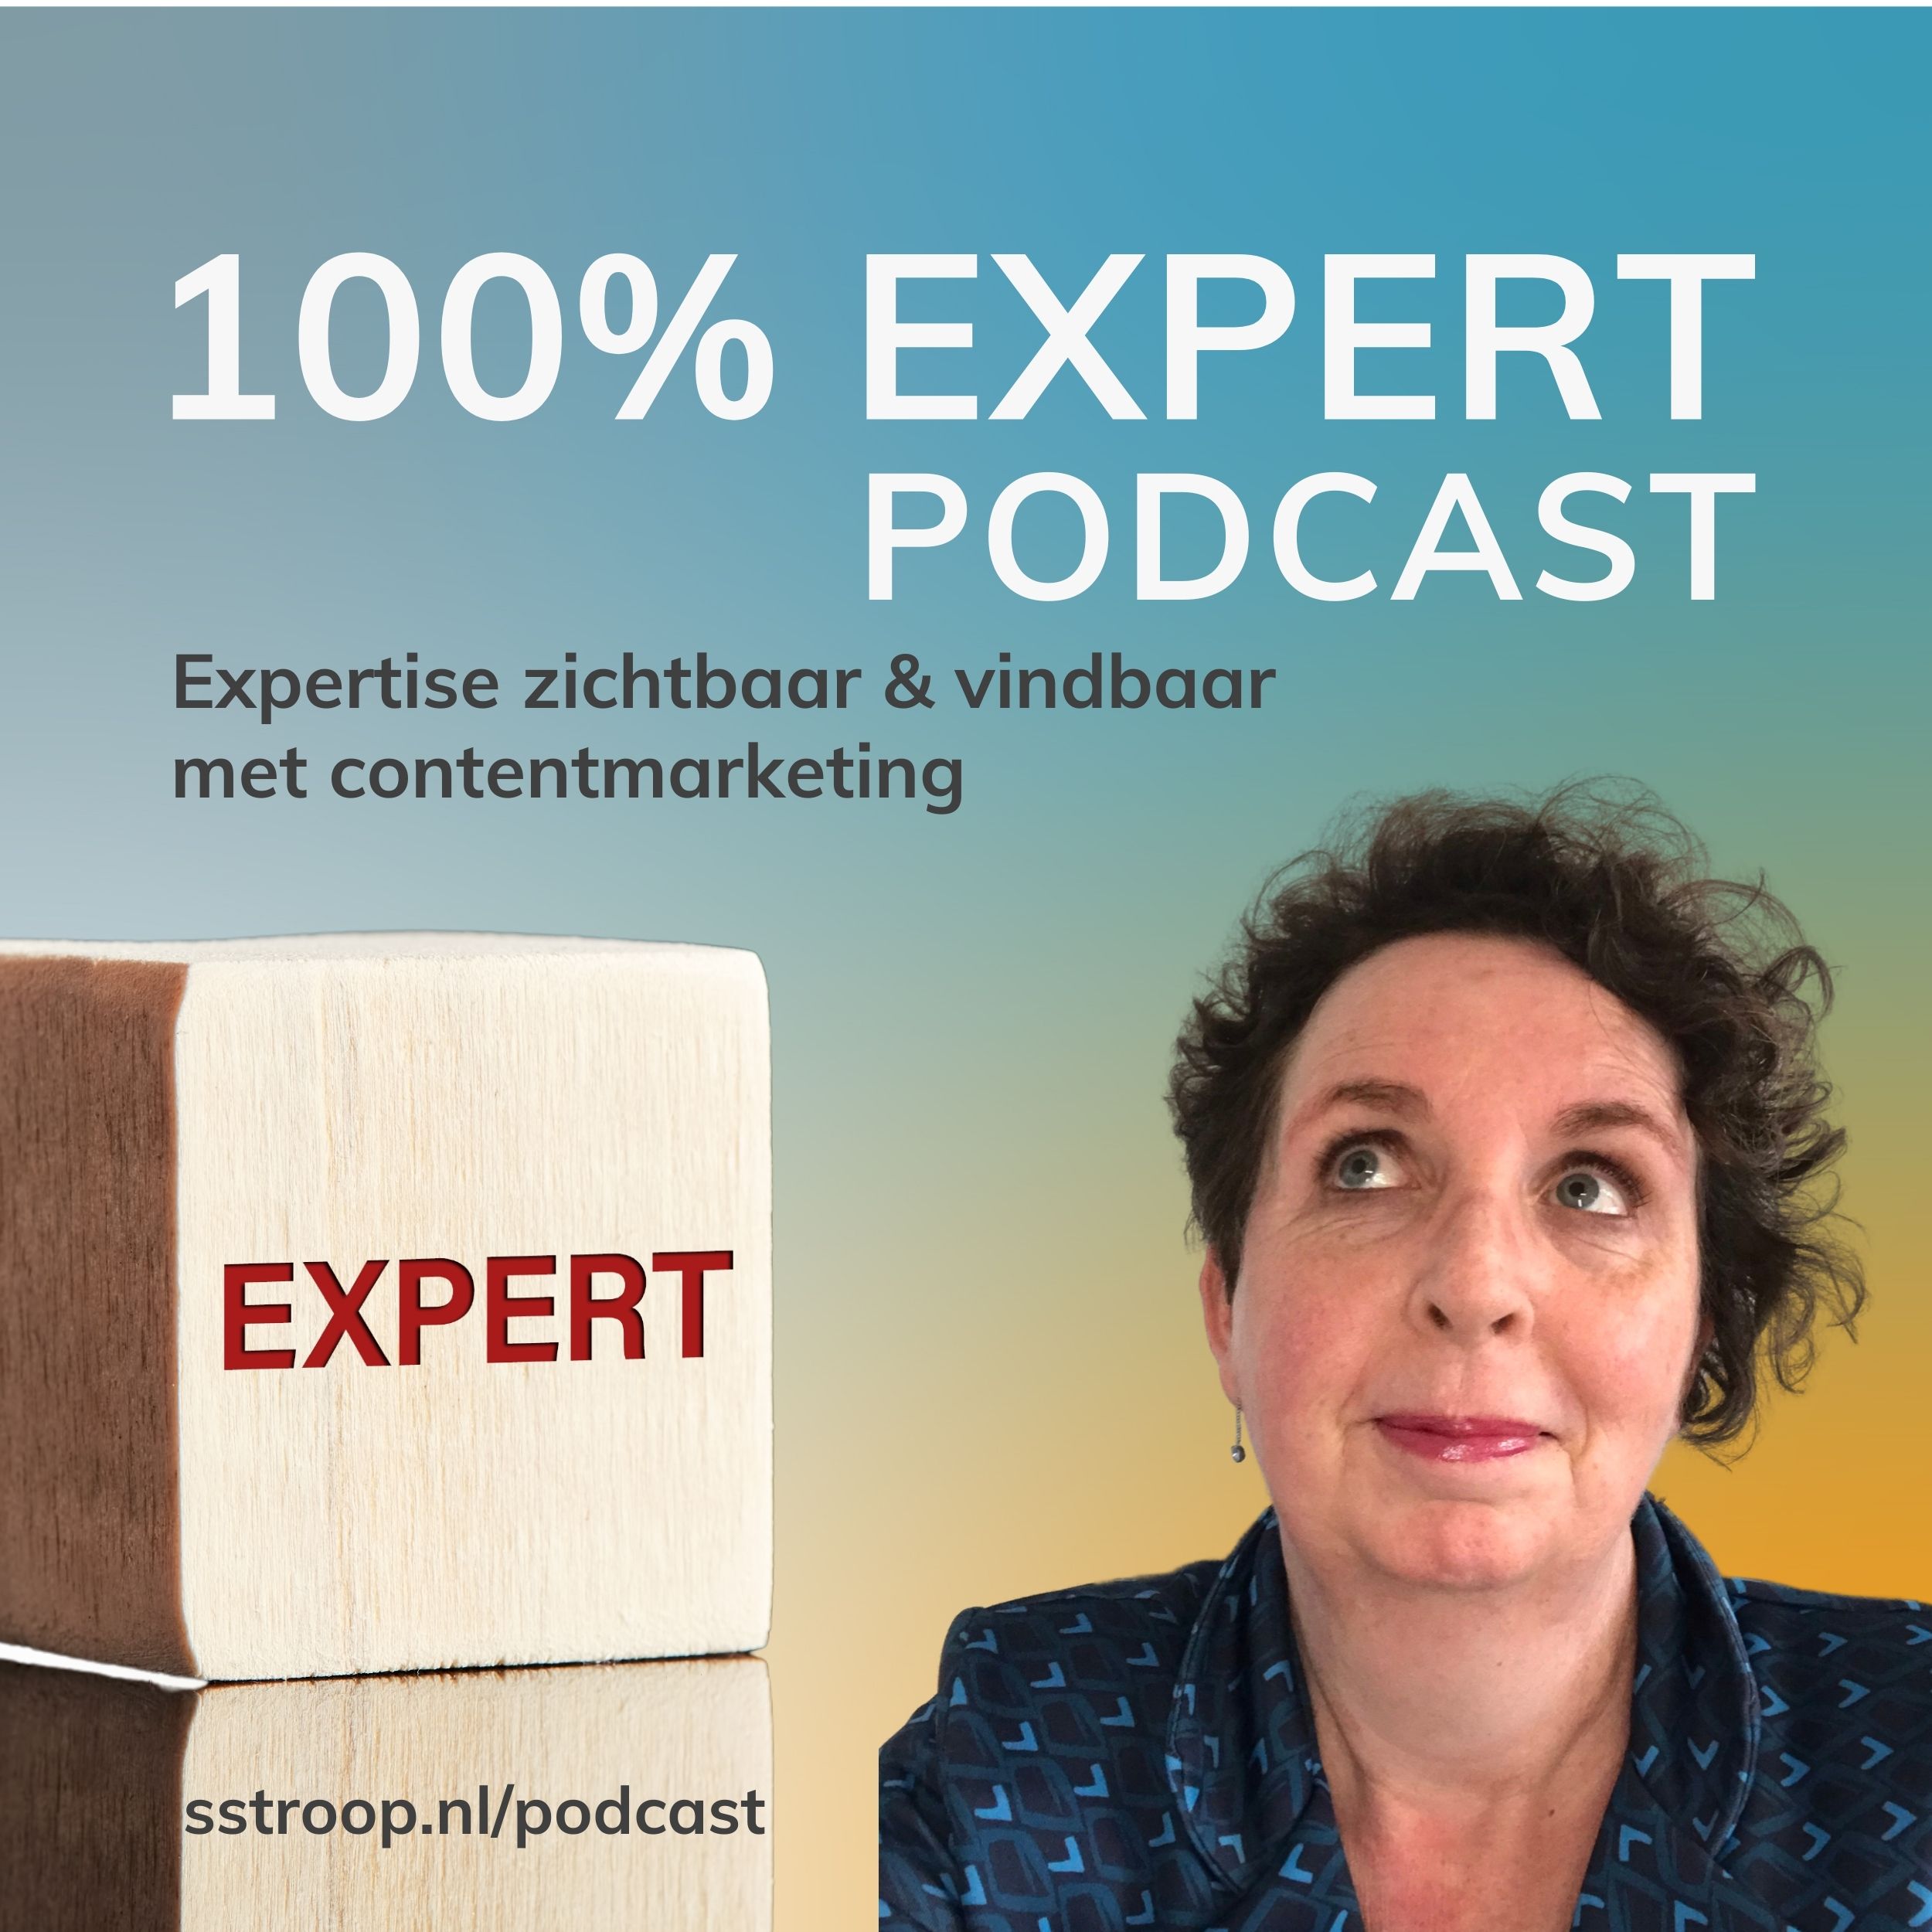 Artwork for podcast 100% Expert Podcast